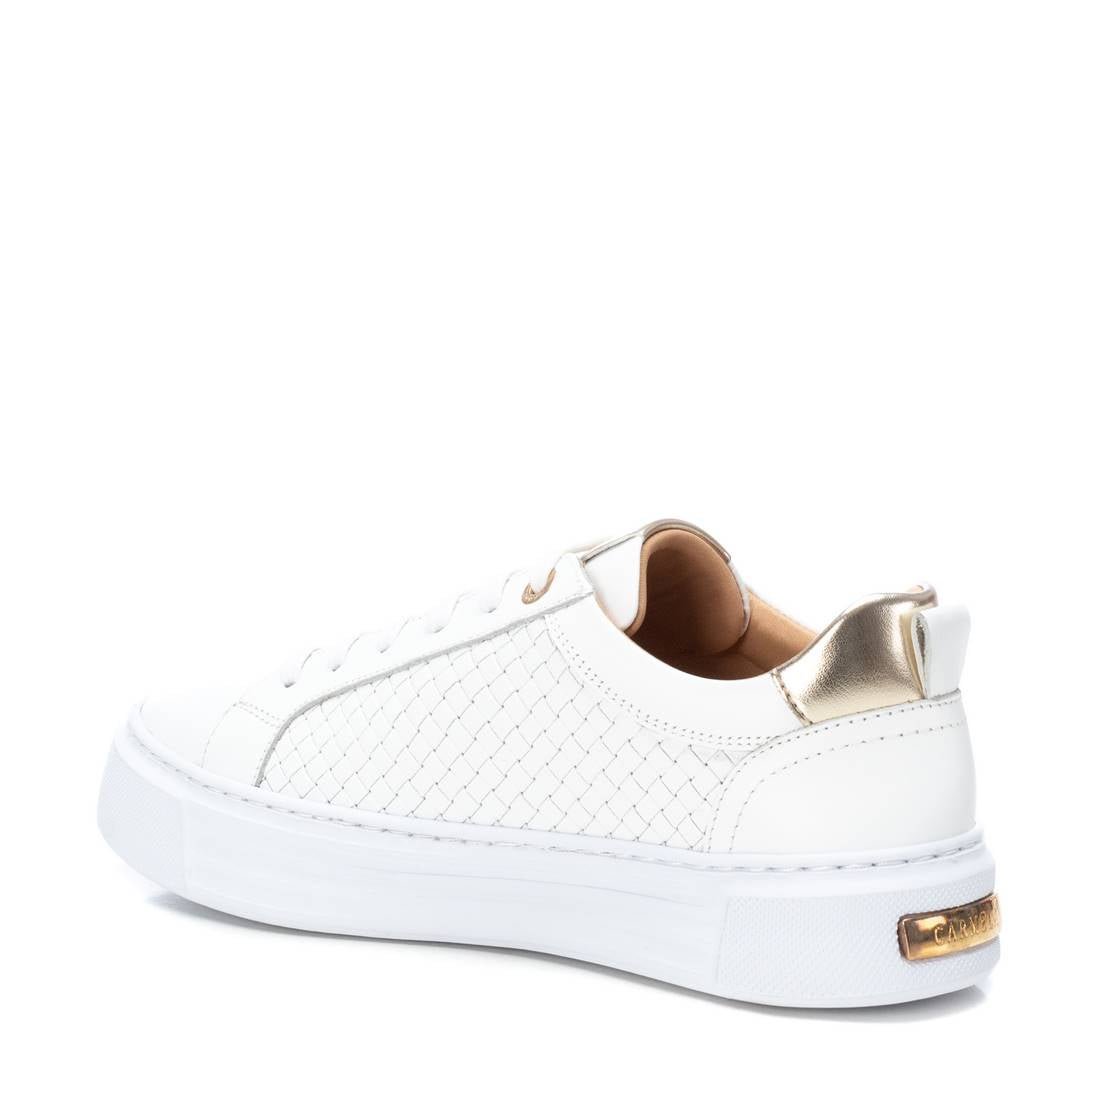 Carmel mujer zapatillas piel blanco 161313 - 36 - Blanco - comprar en KAPLES SHOES